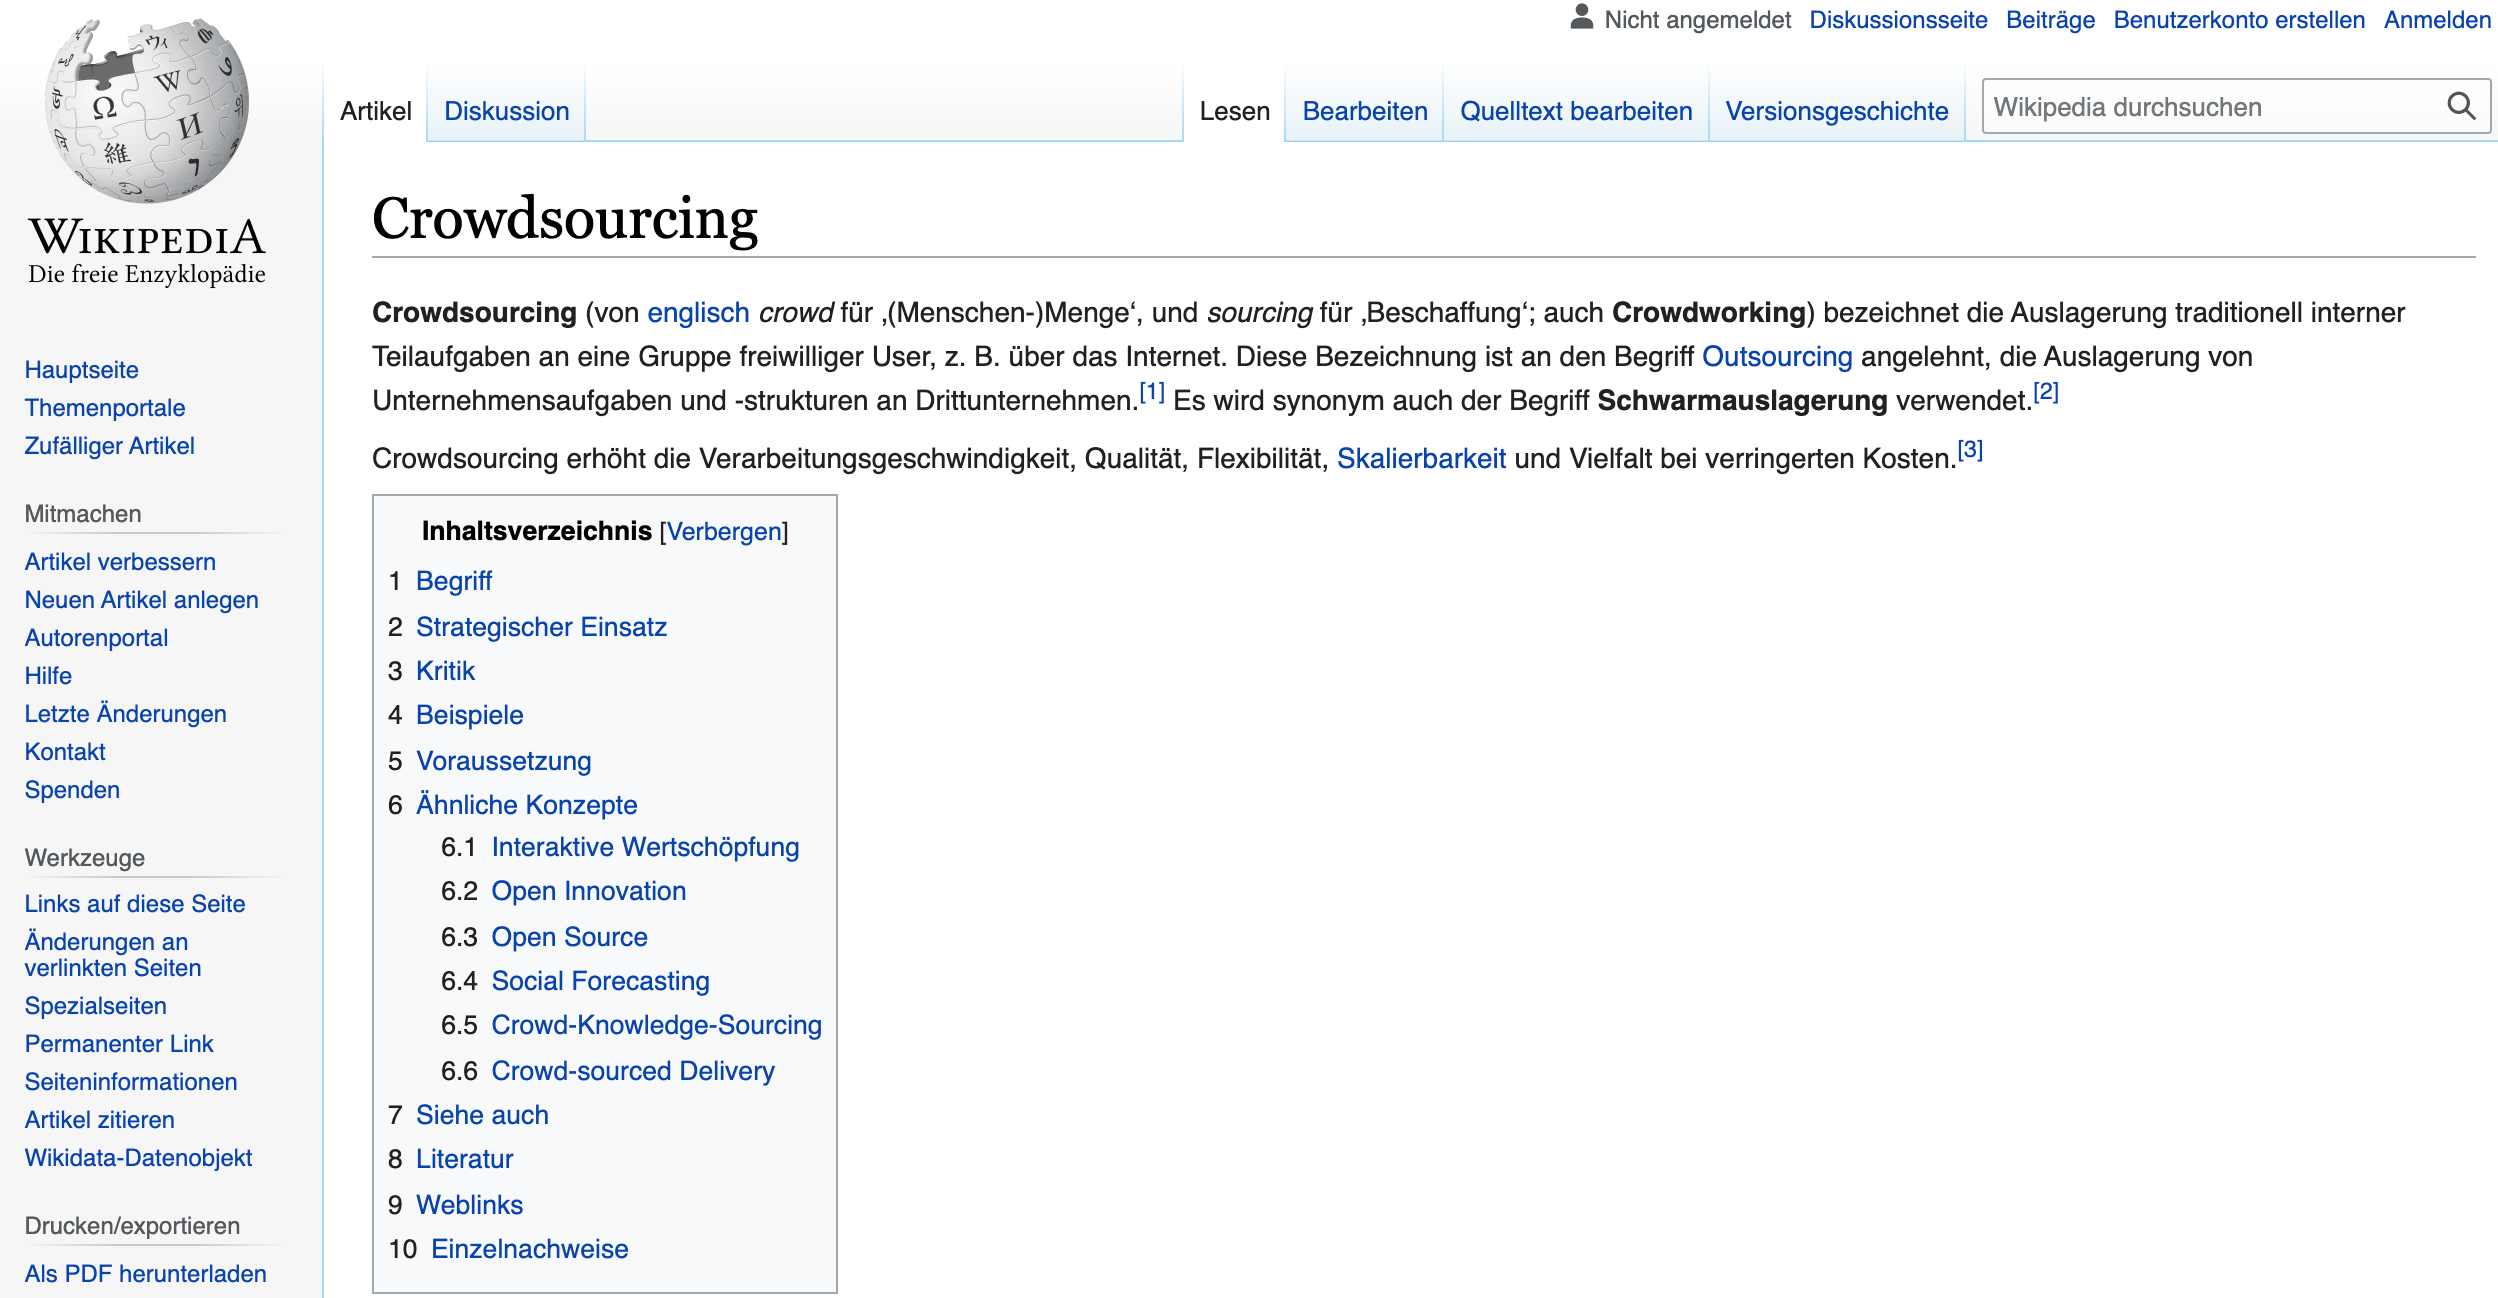 wikipedia als crowdsourcing beispiel